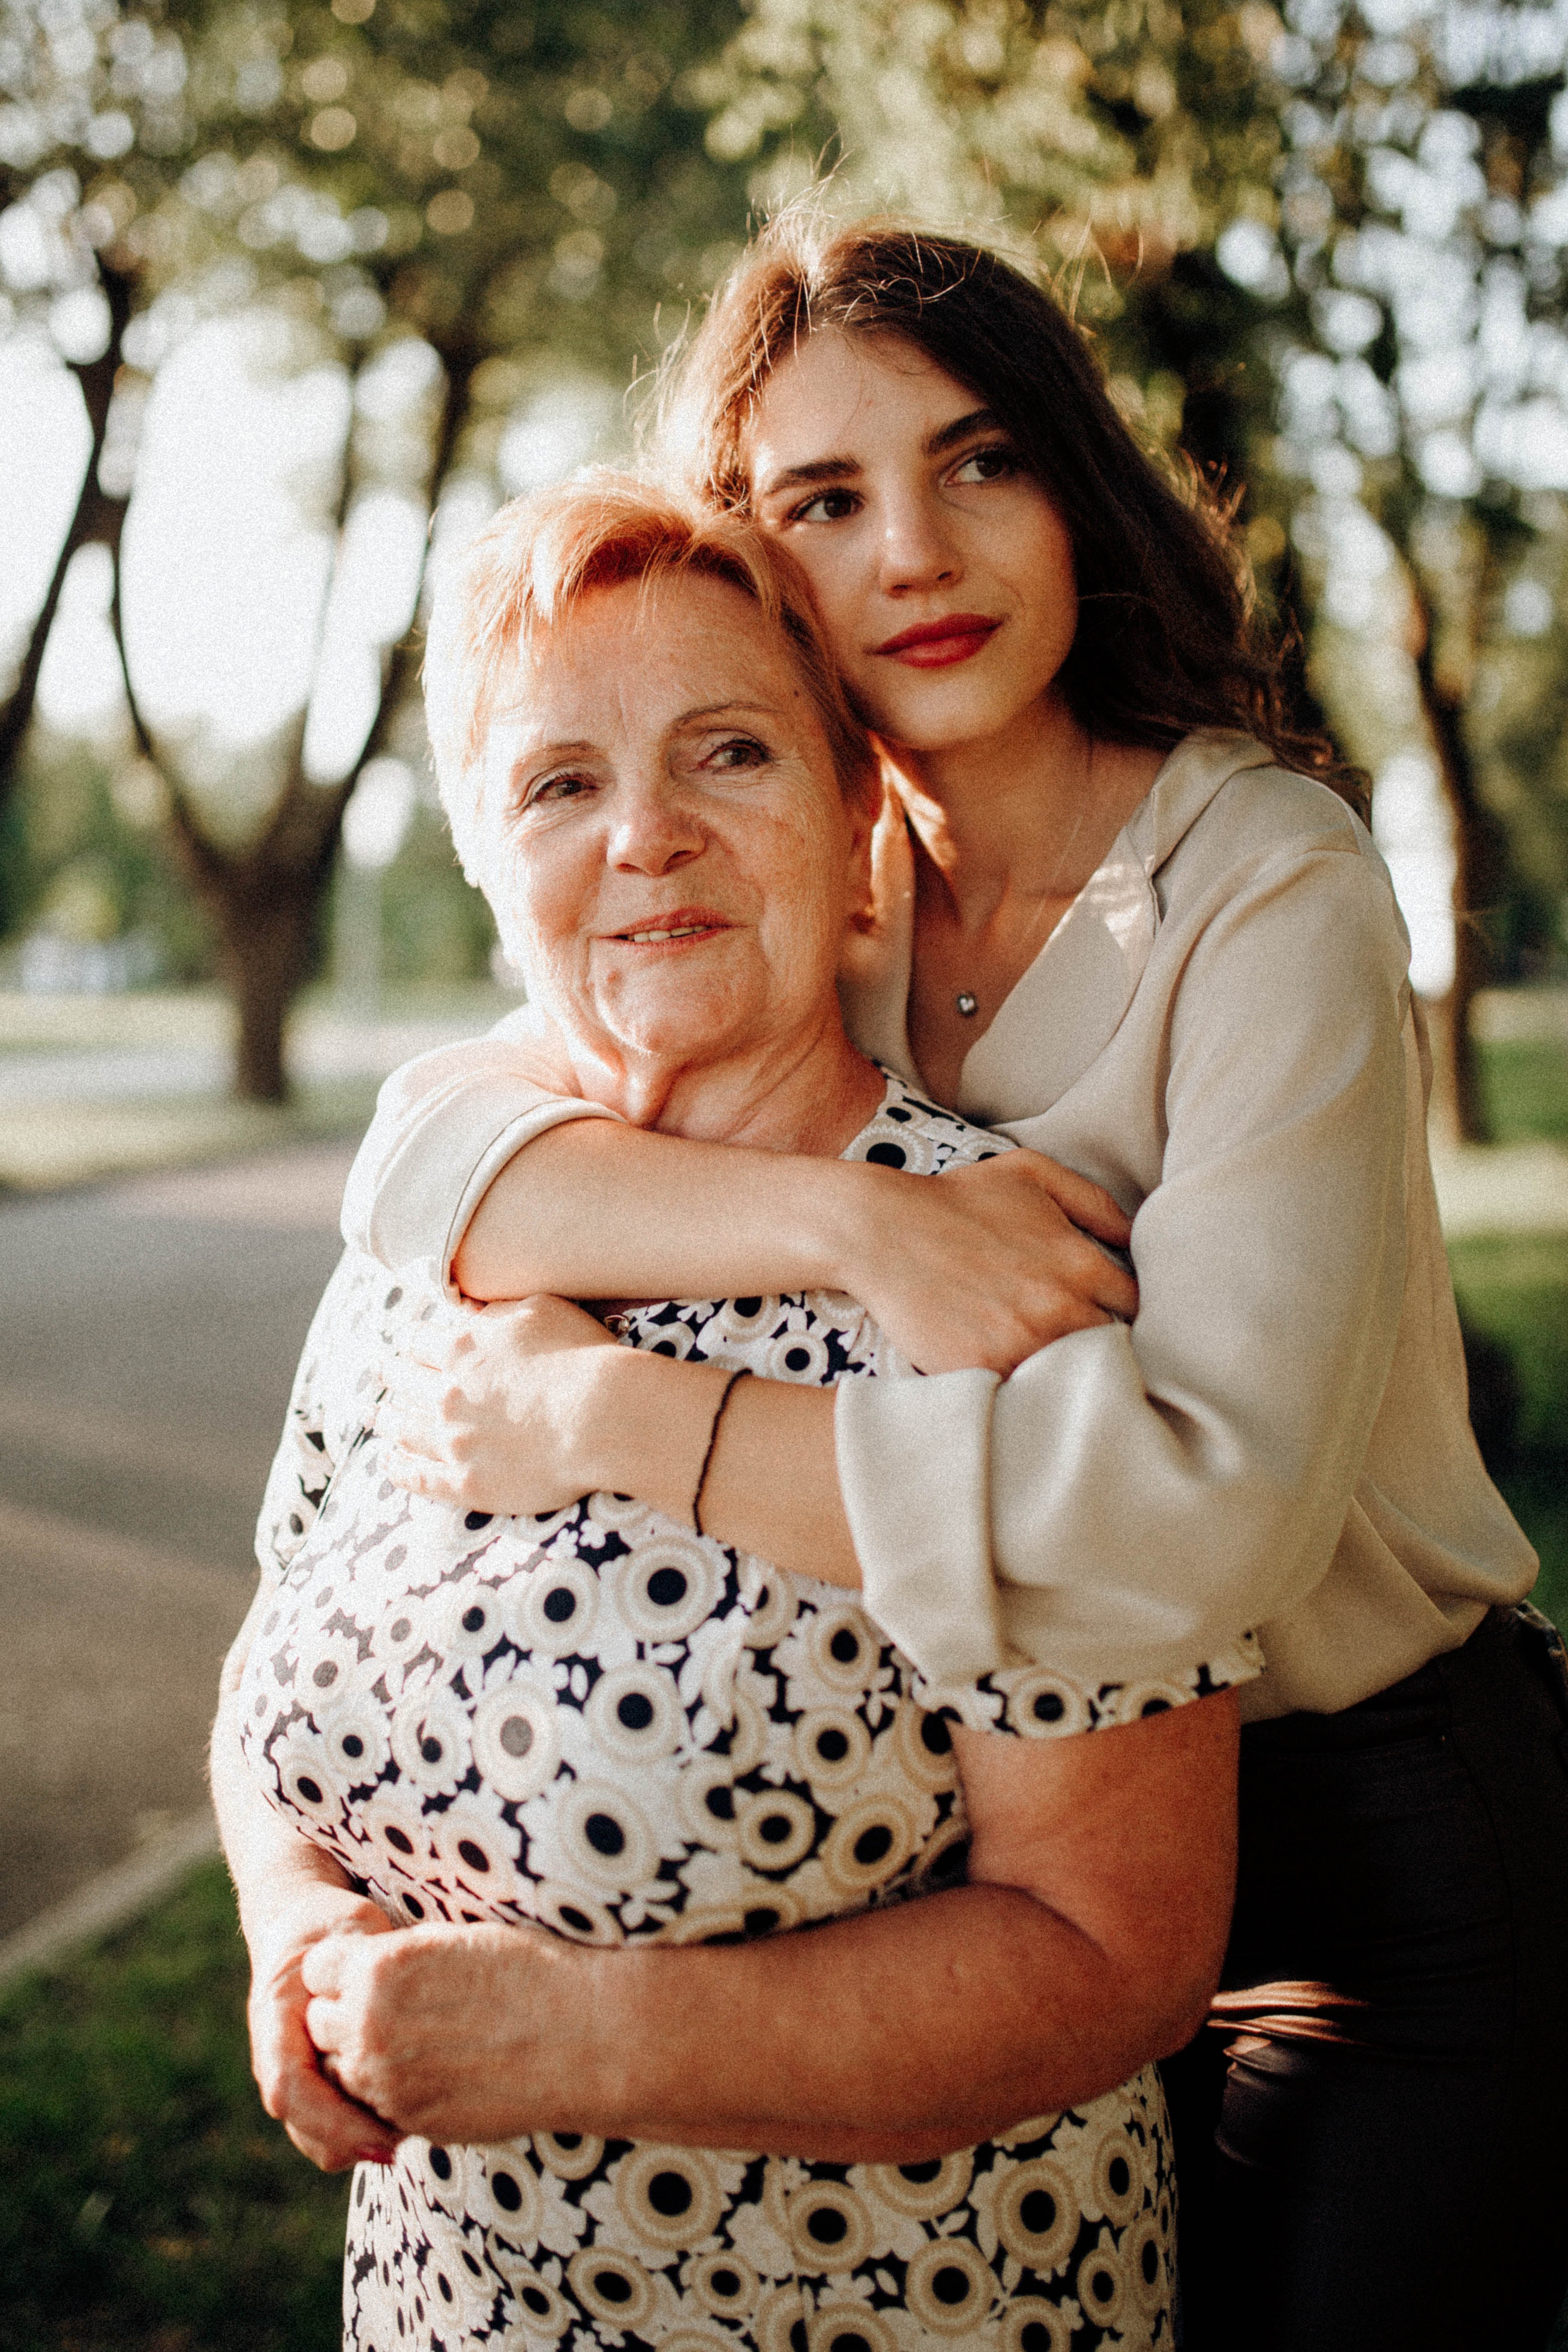 Eine jüngere Frau, die eine ältere Frau von hinten umarmt | Quelle: Pexels